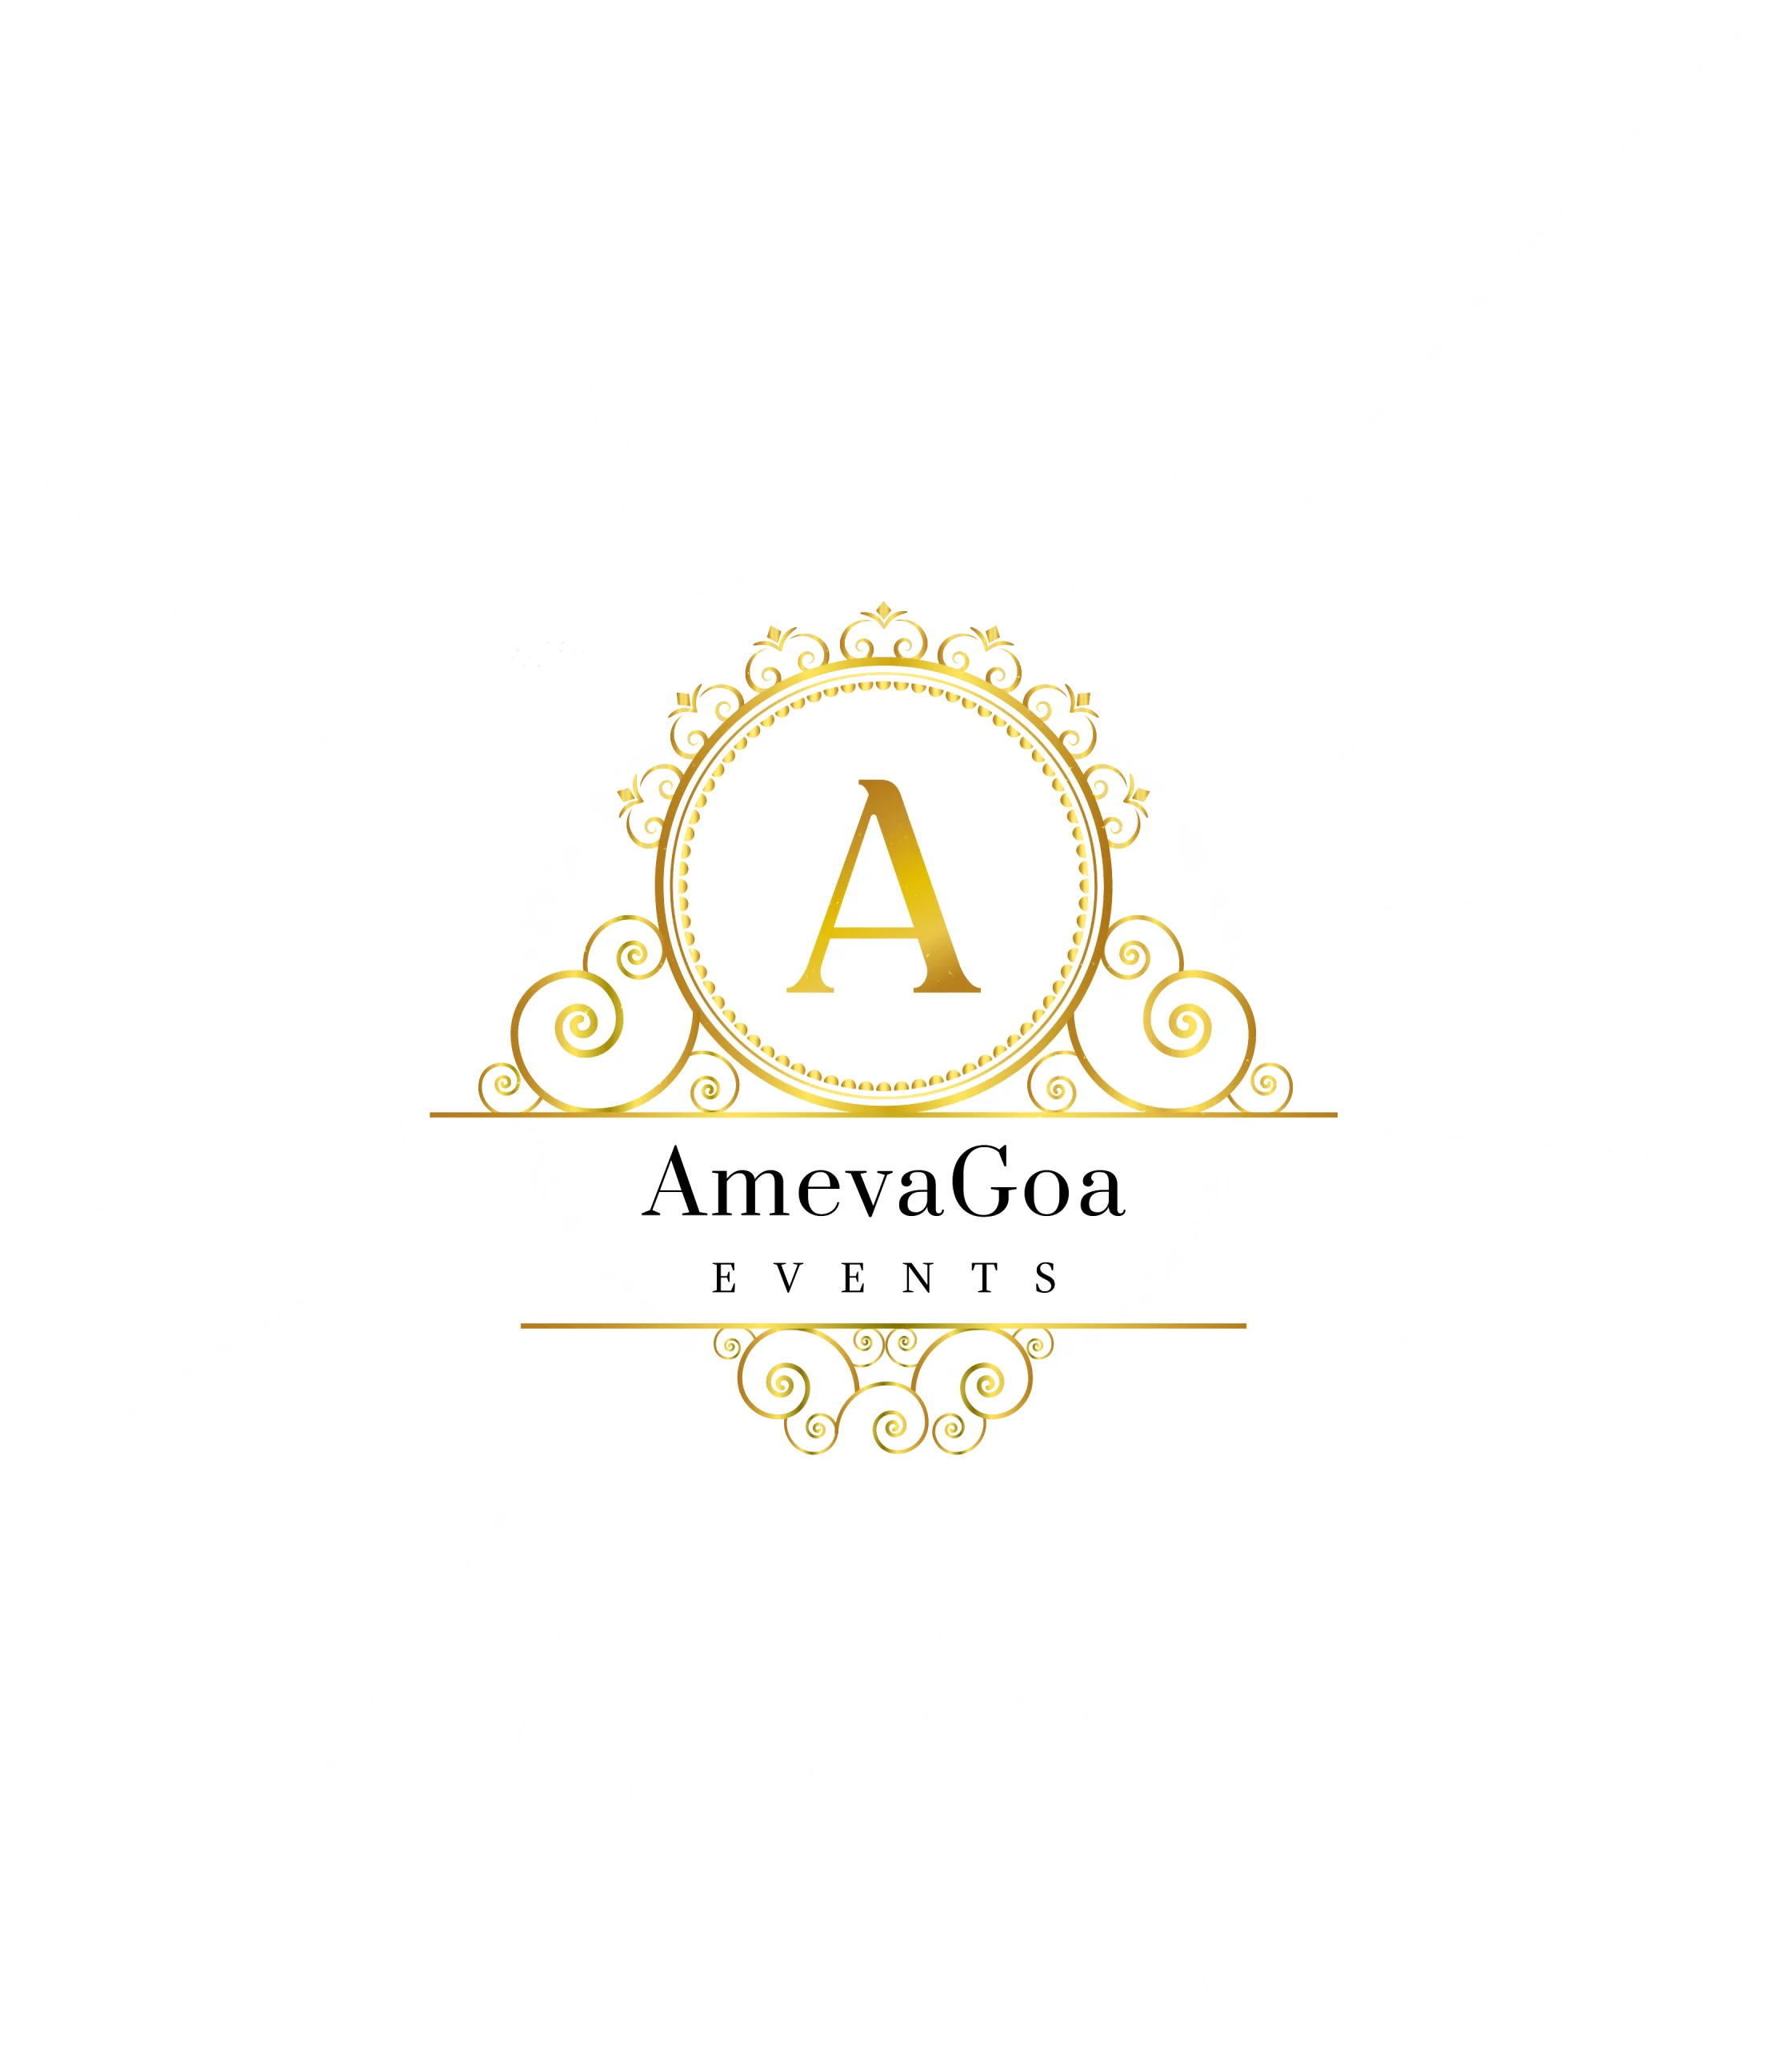 AmevaGoa Events